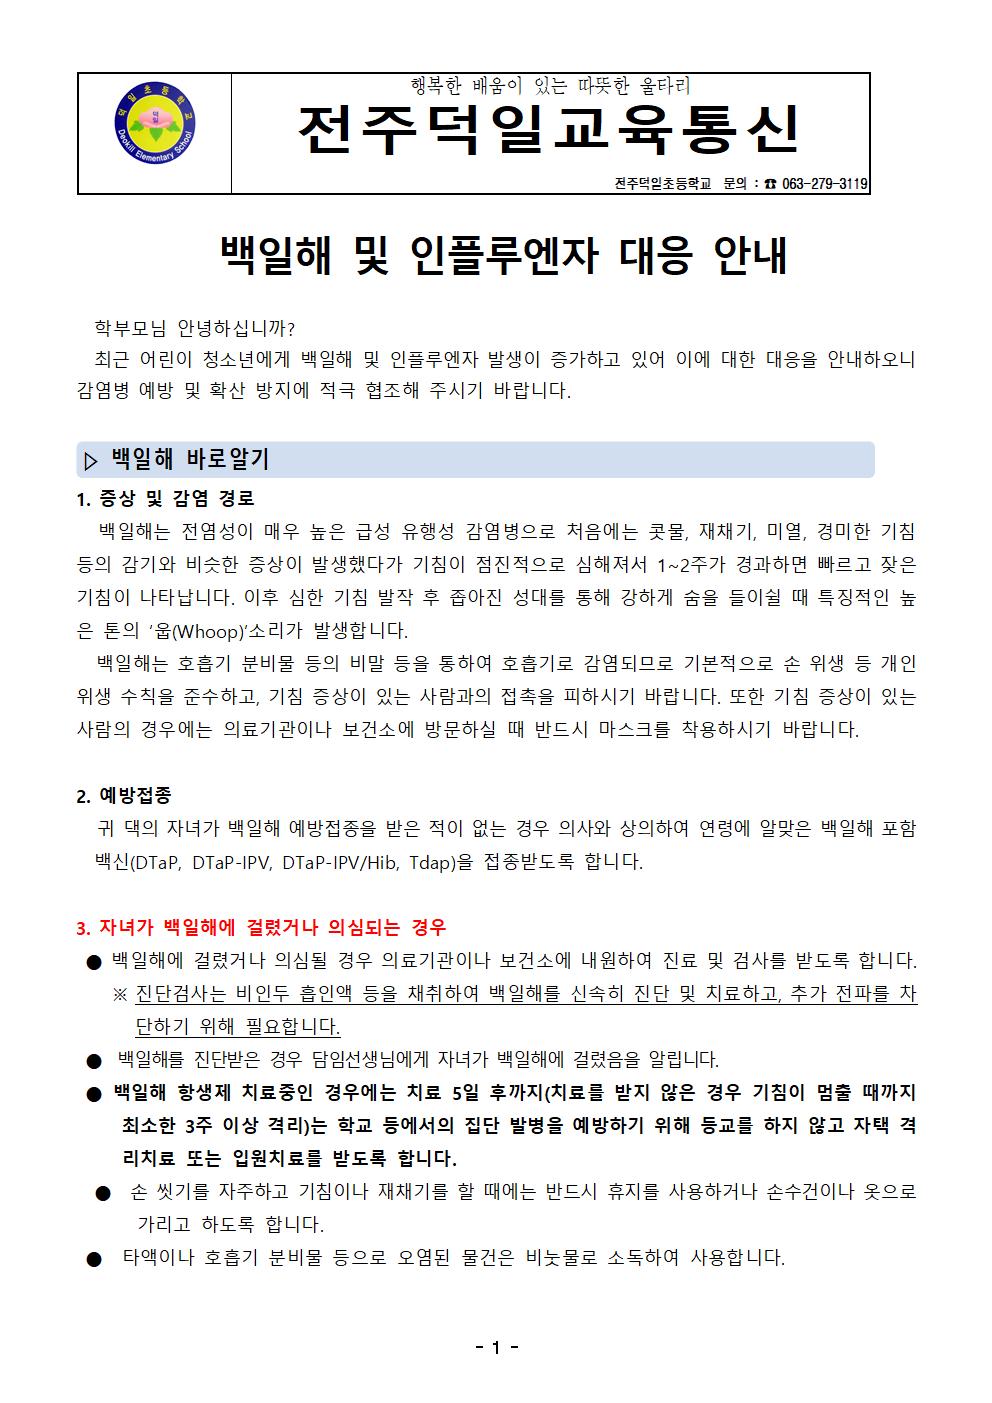 백일해 및 인플루엔자 대응 안내 통신문001